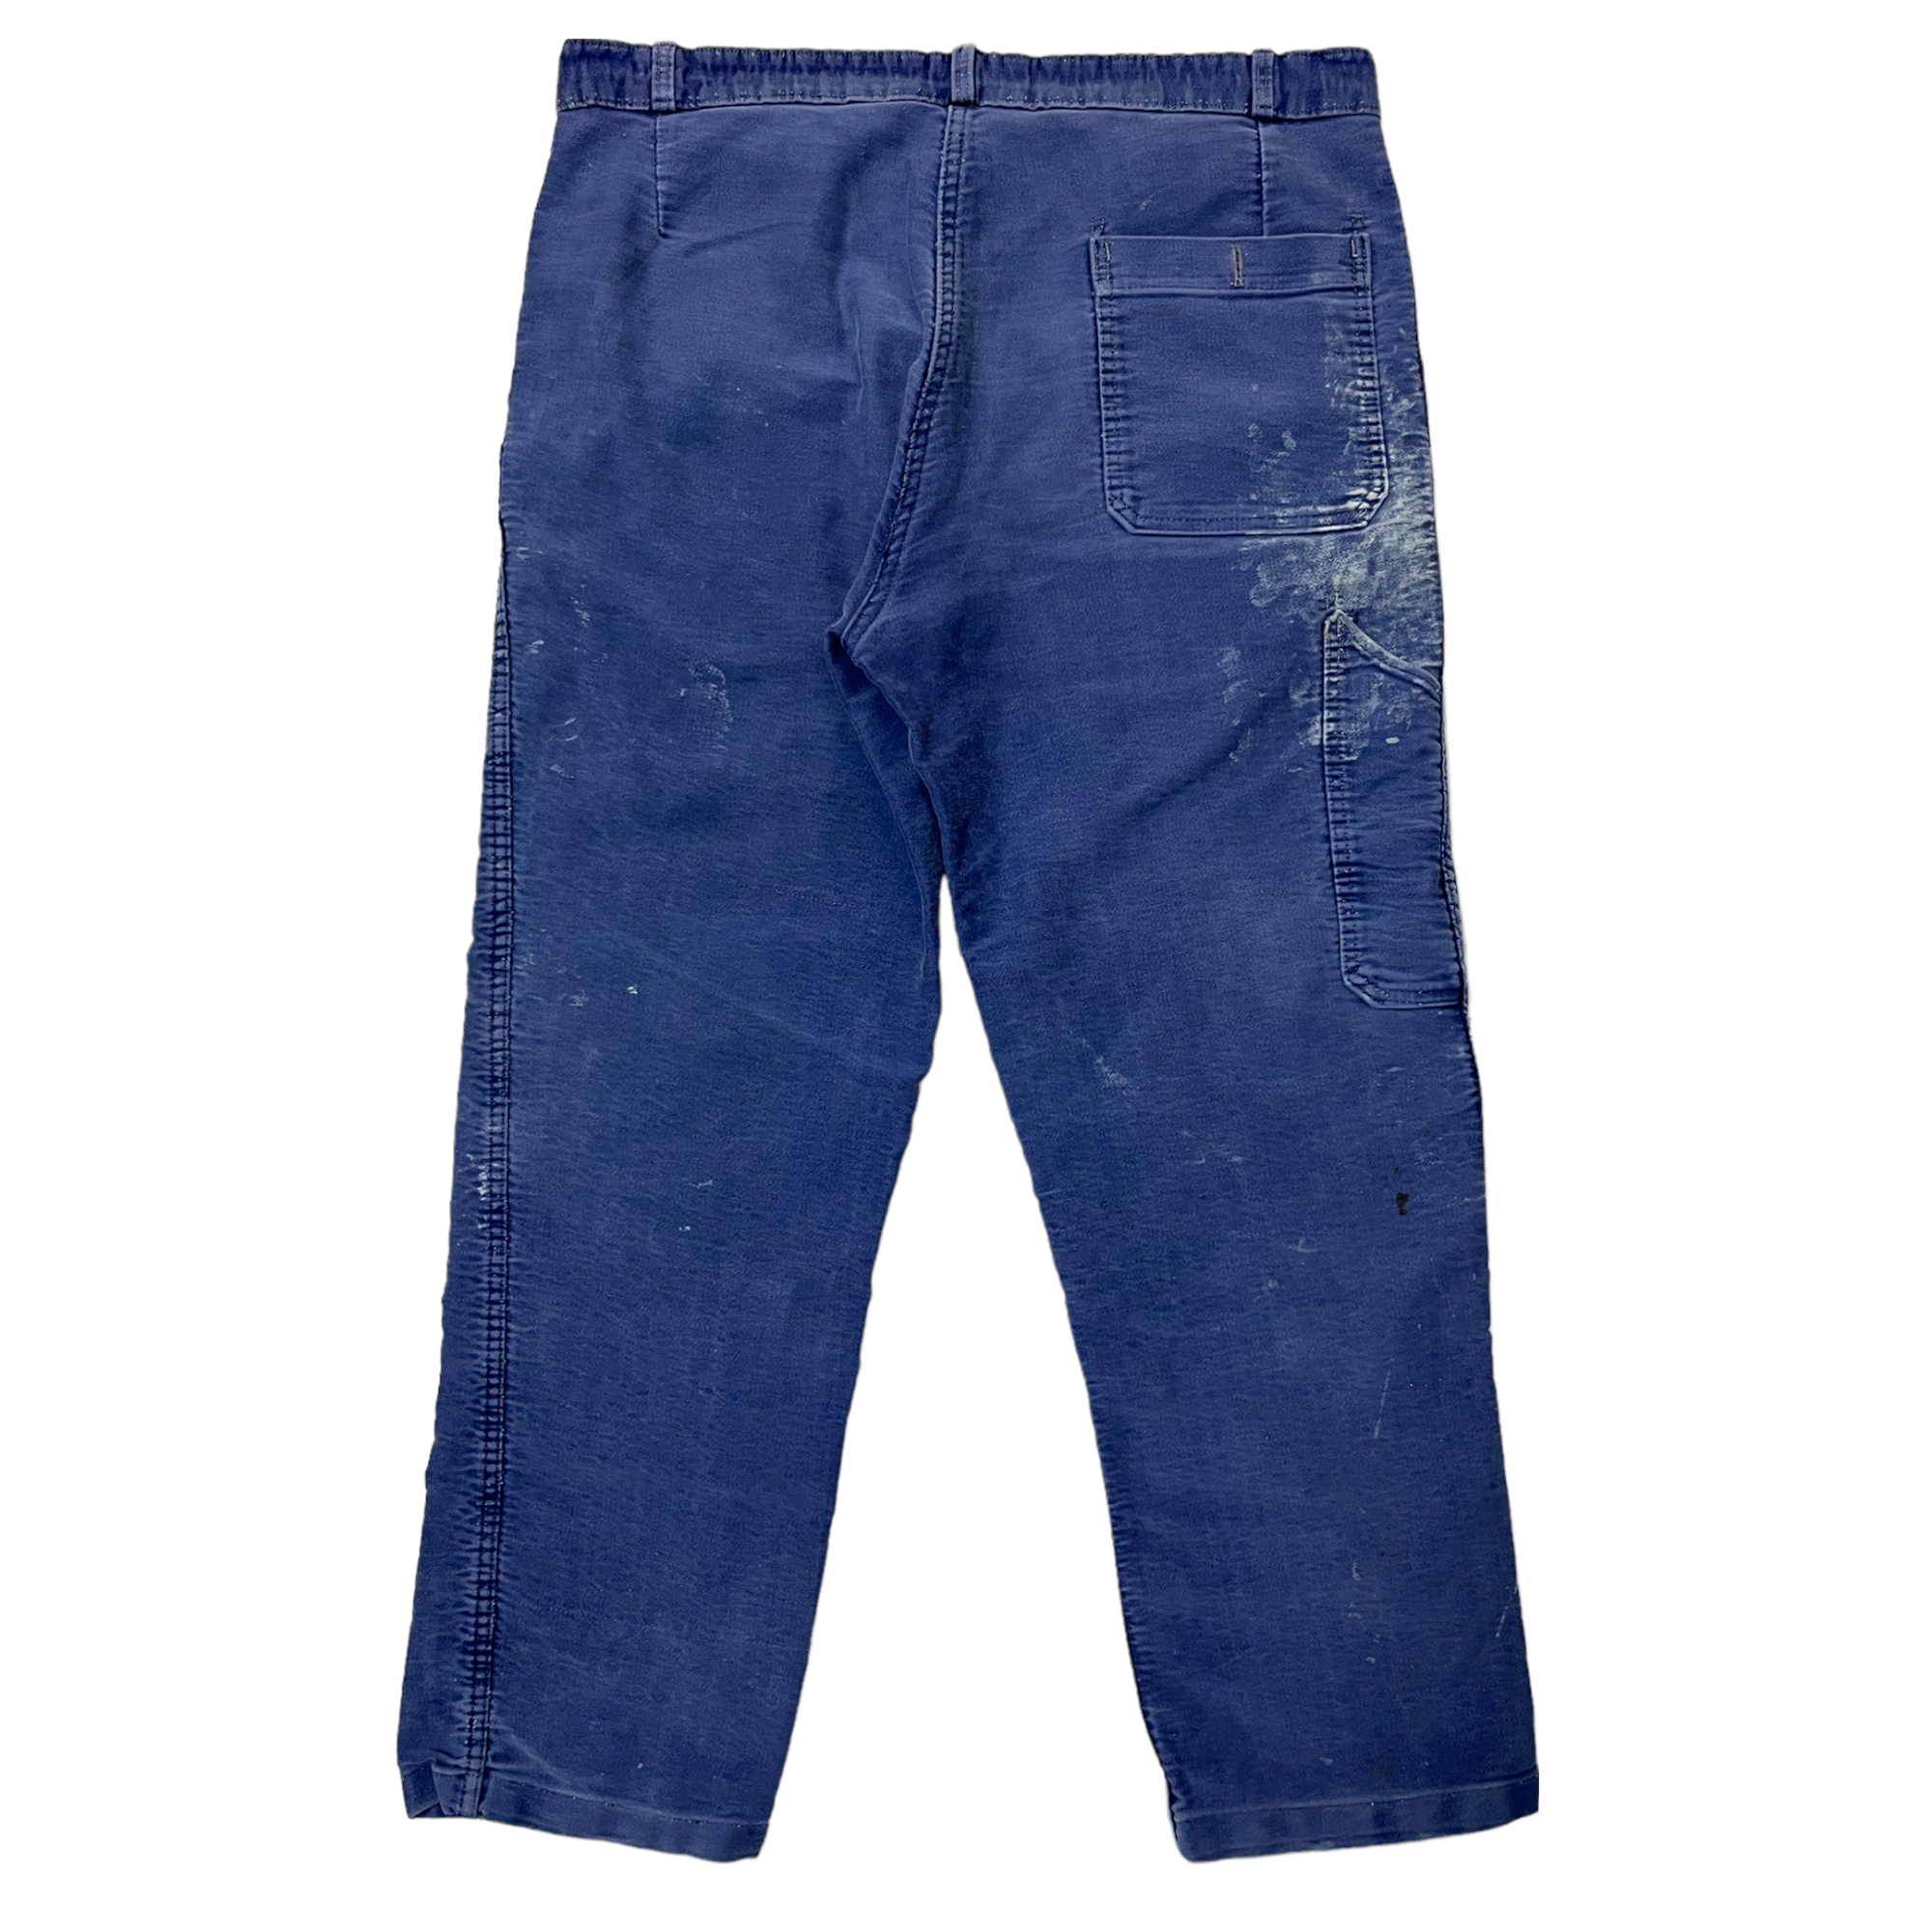 1950s French Workwear Moleskin Pants - Shades of Indigo - 37x28